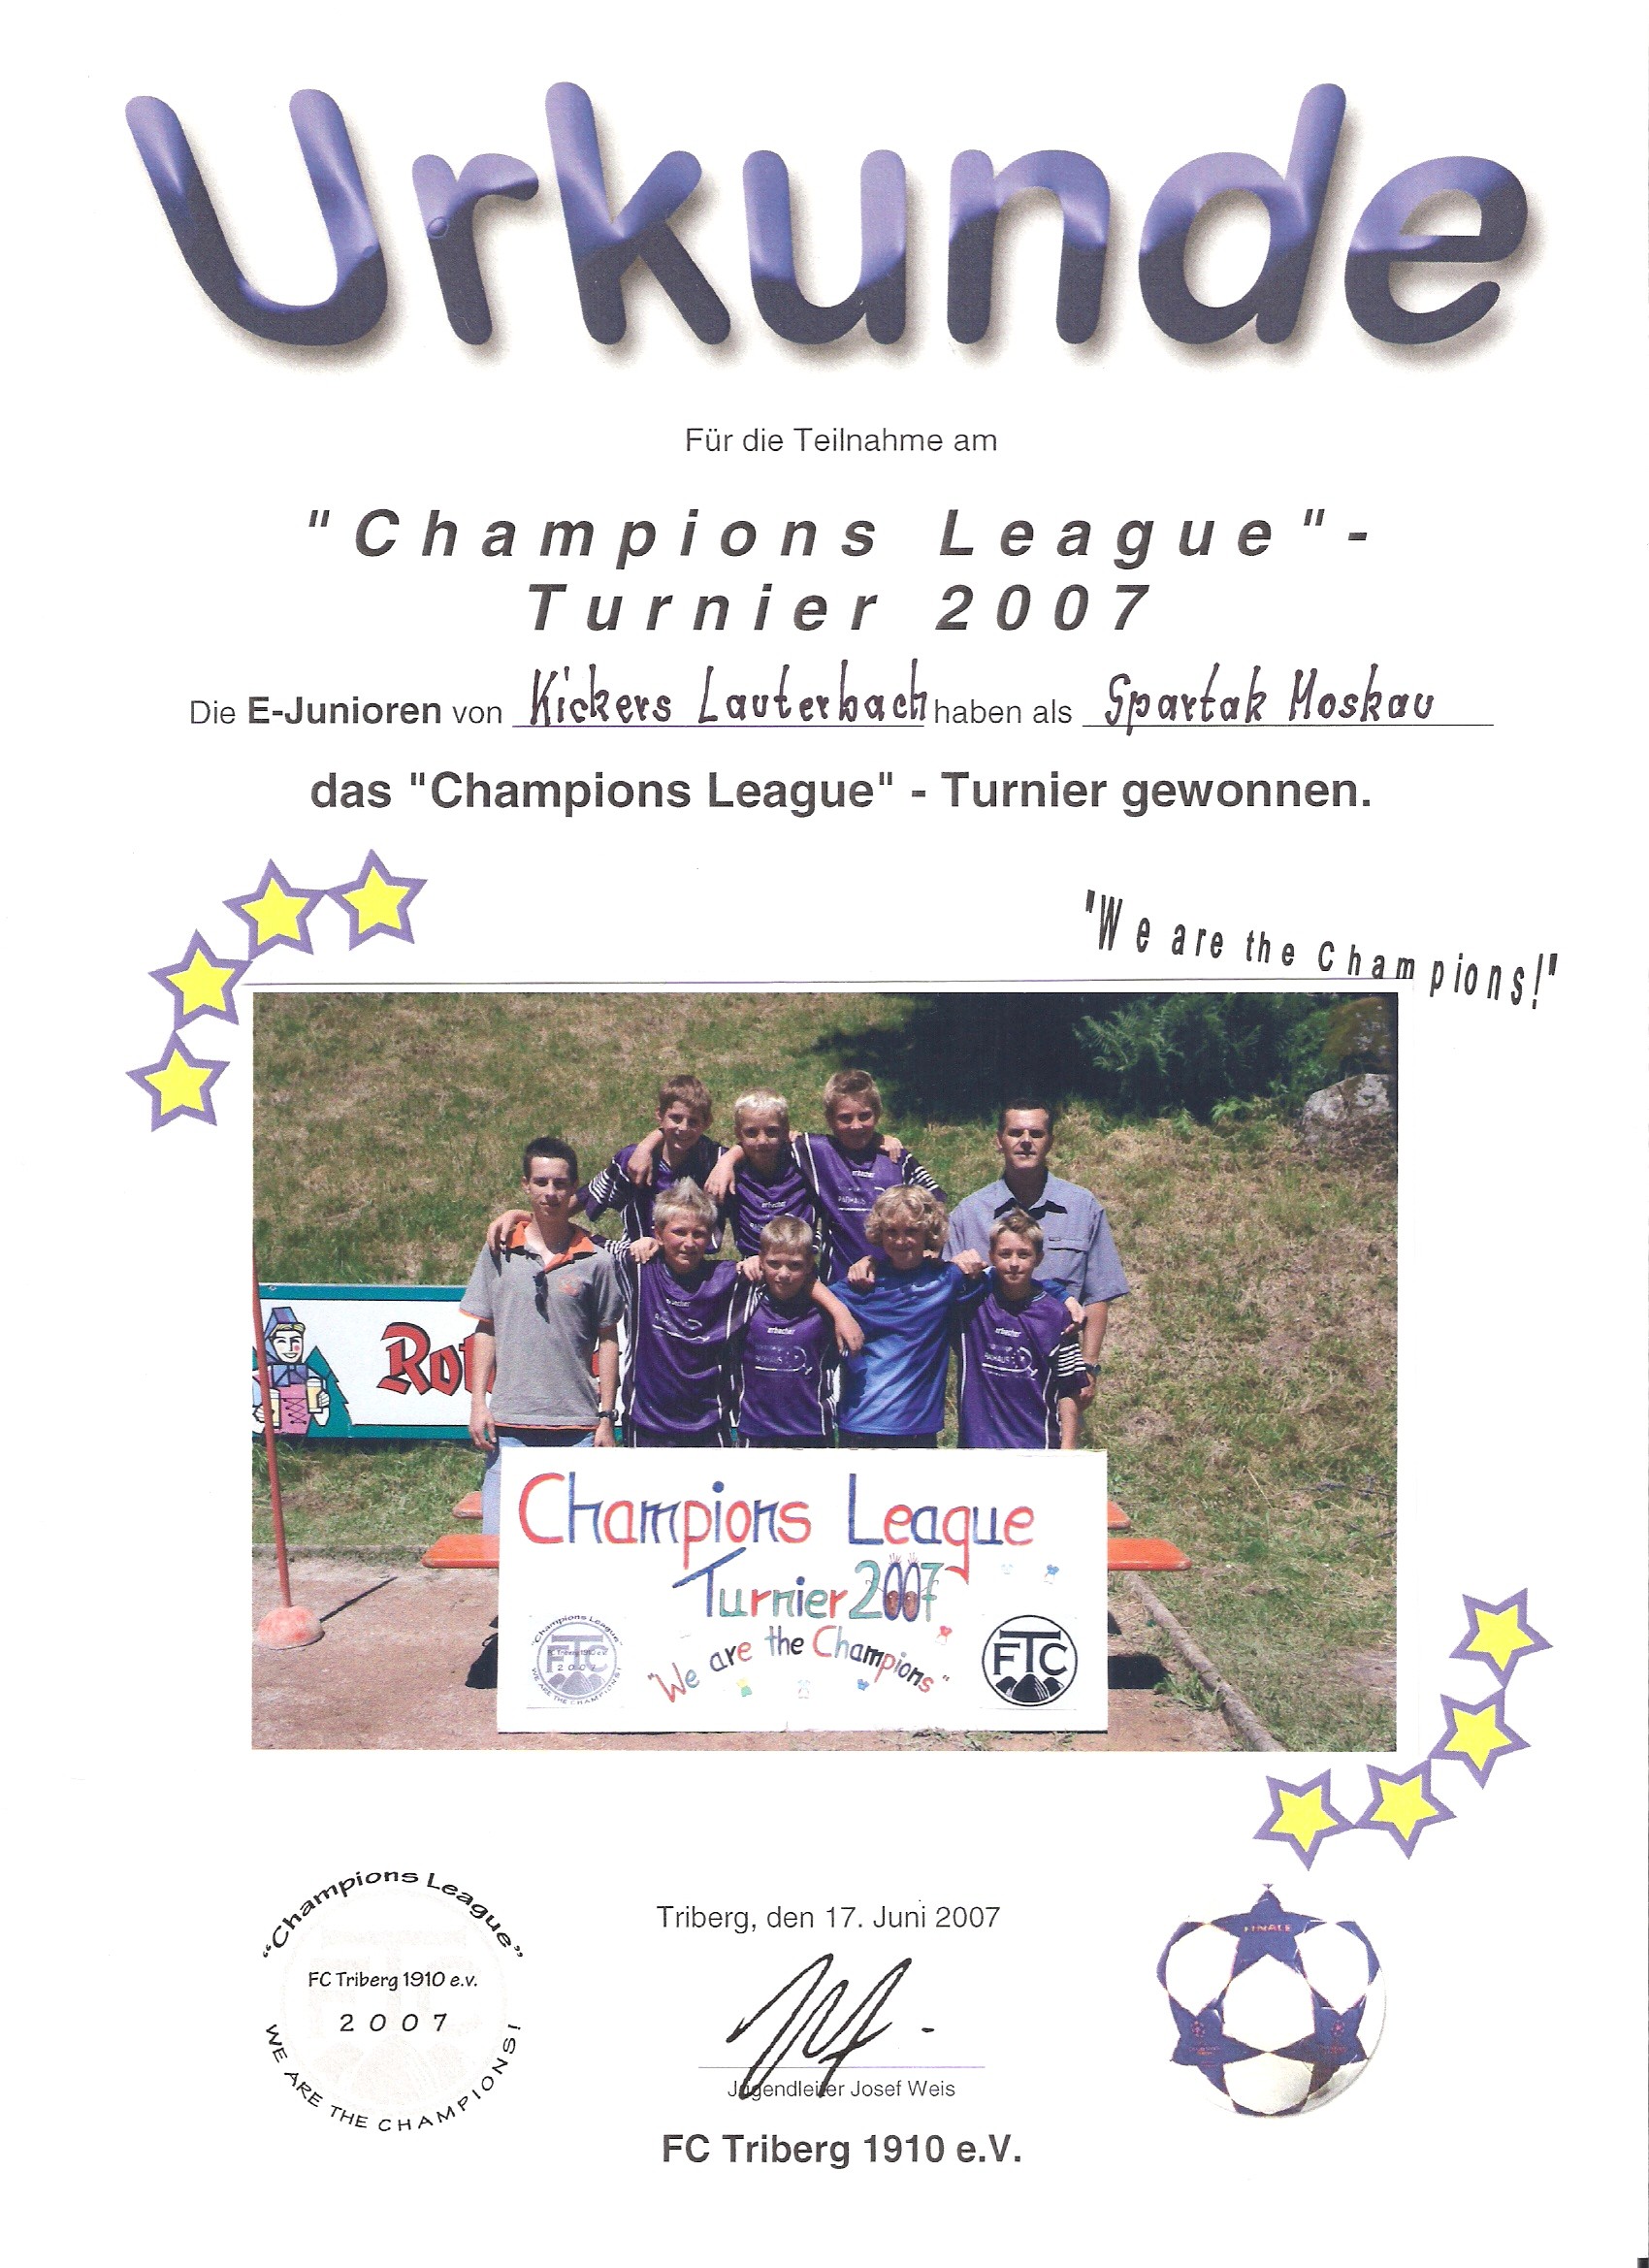 Die E-Jugend der Kickers gewann das Champions-League-Turnier in Triberg